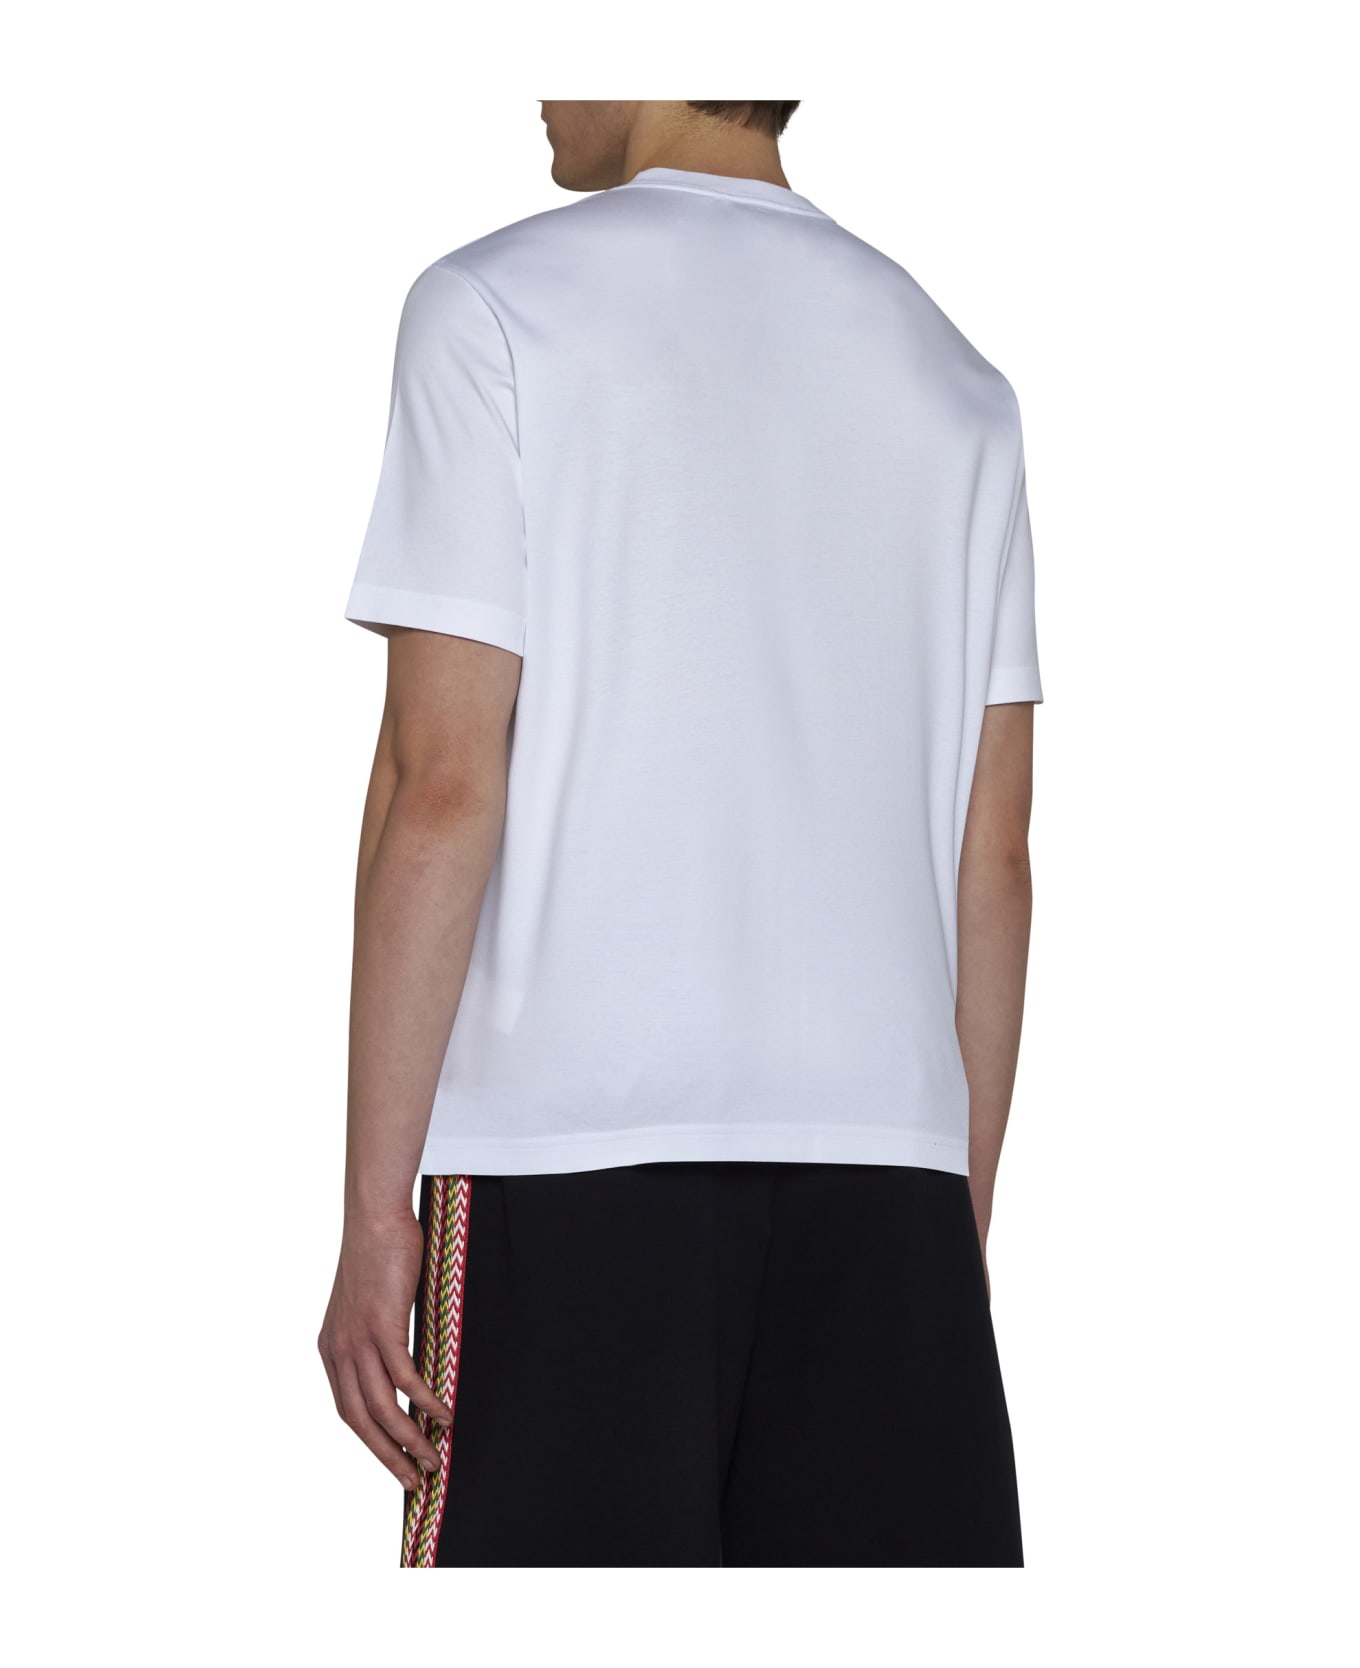 Lanvin T-Shirt - Optic white